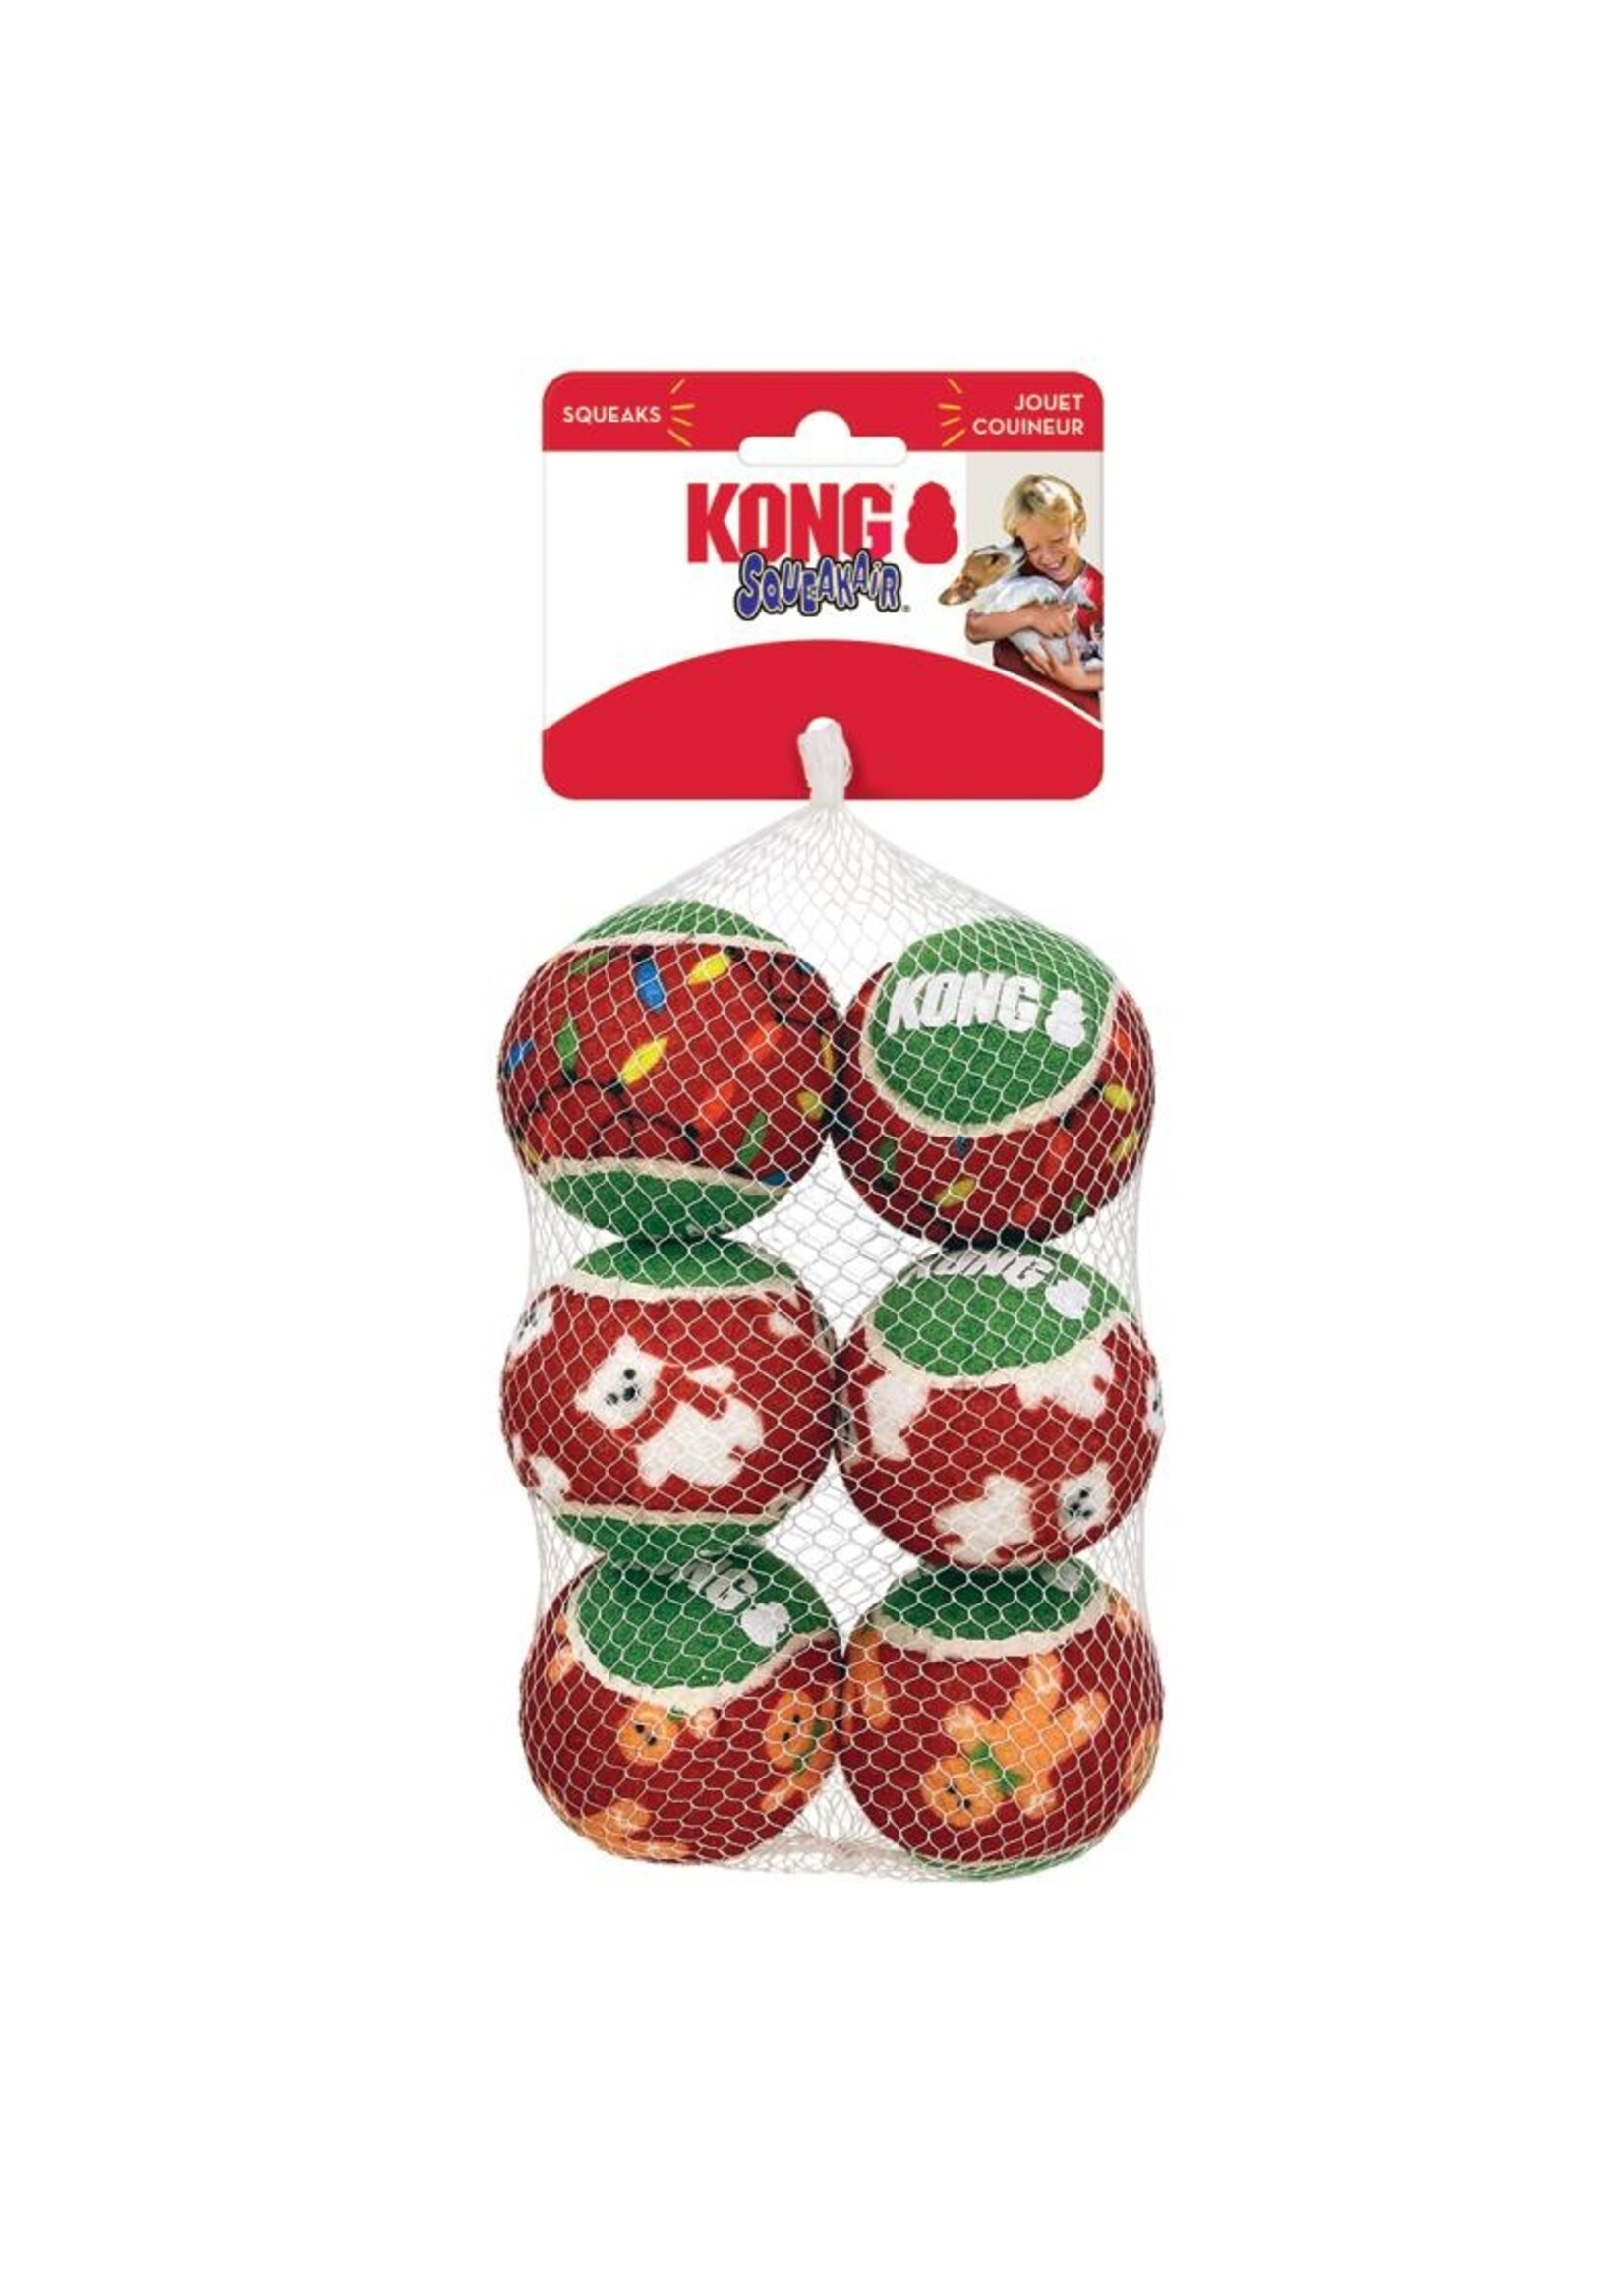 Kong Kong Holiday SqueakAir Balls 6pack Medium